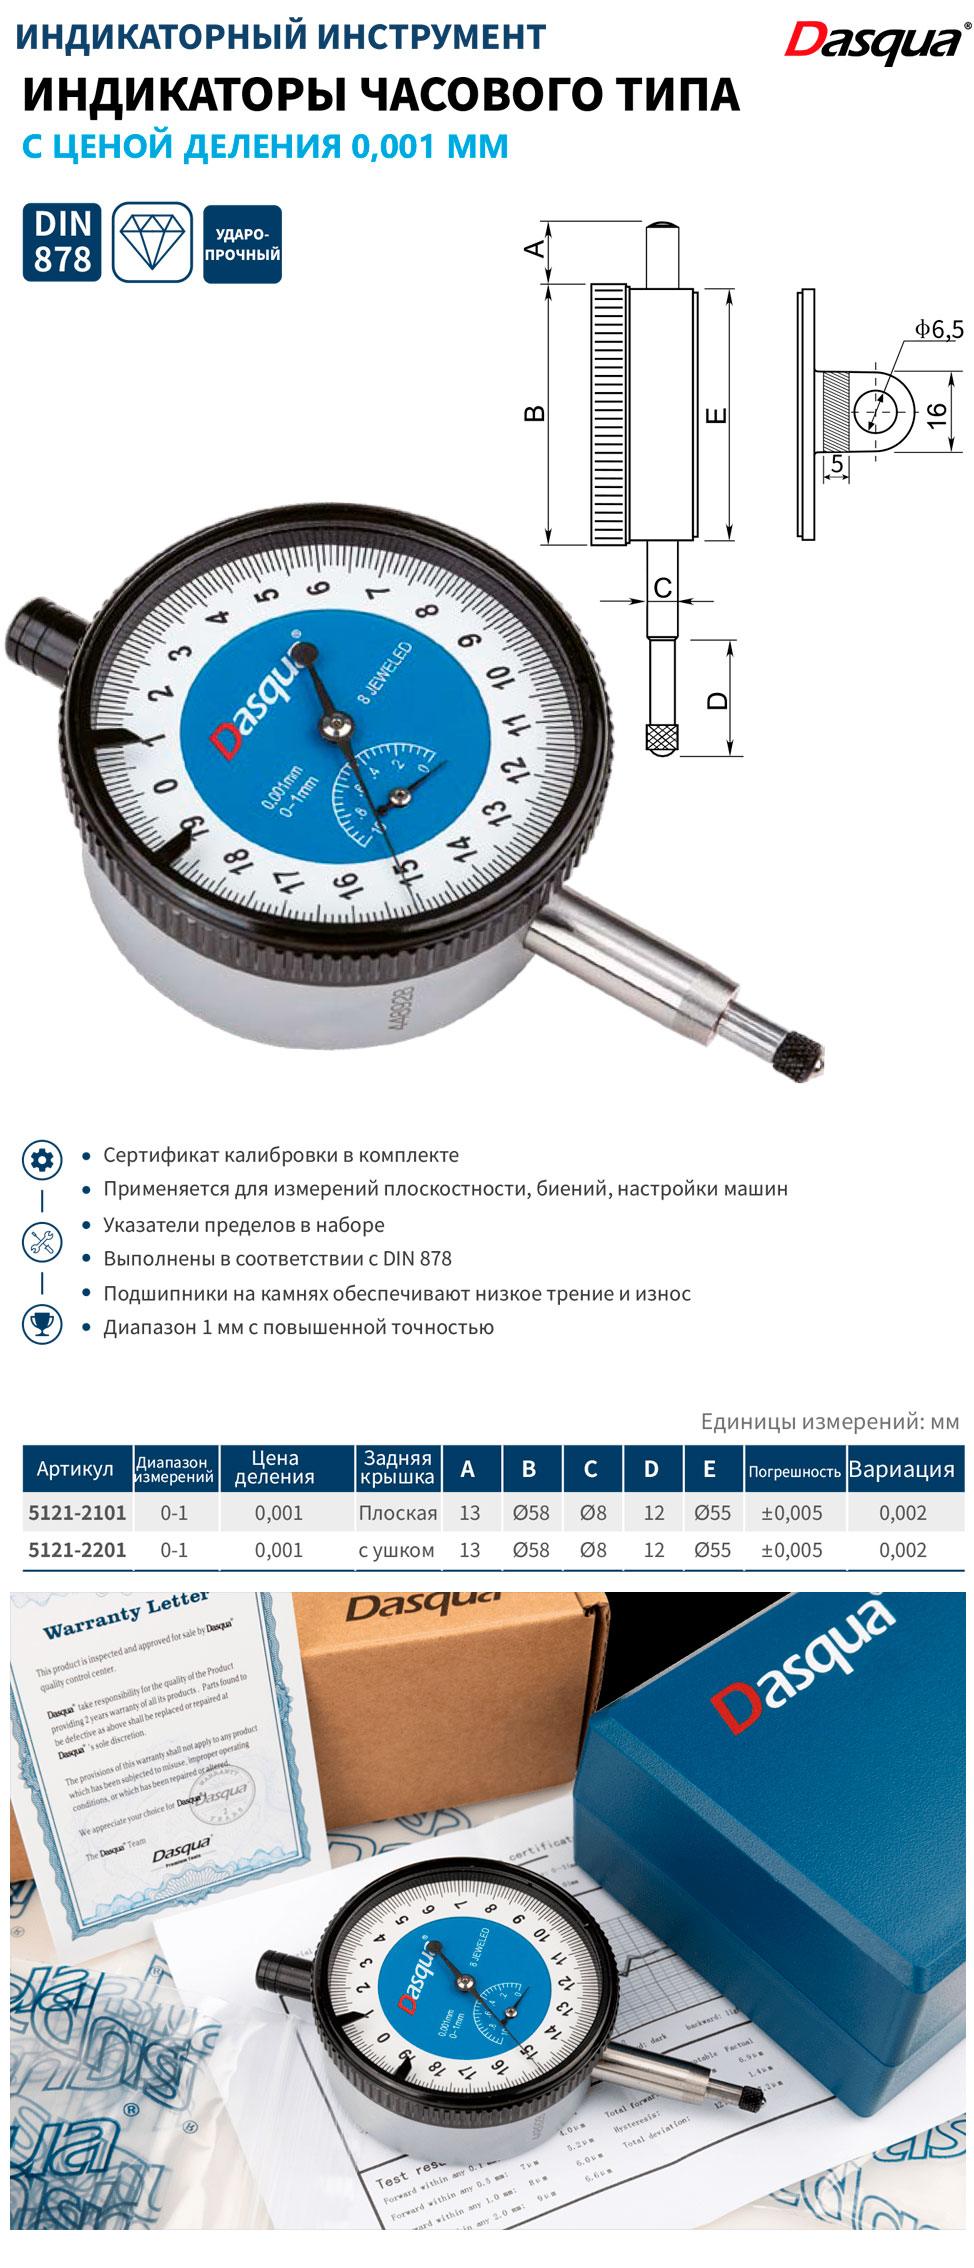 Прецизионные ндикаторы часового типа, 0.001 мм